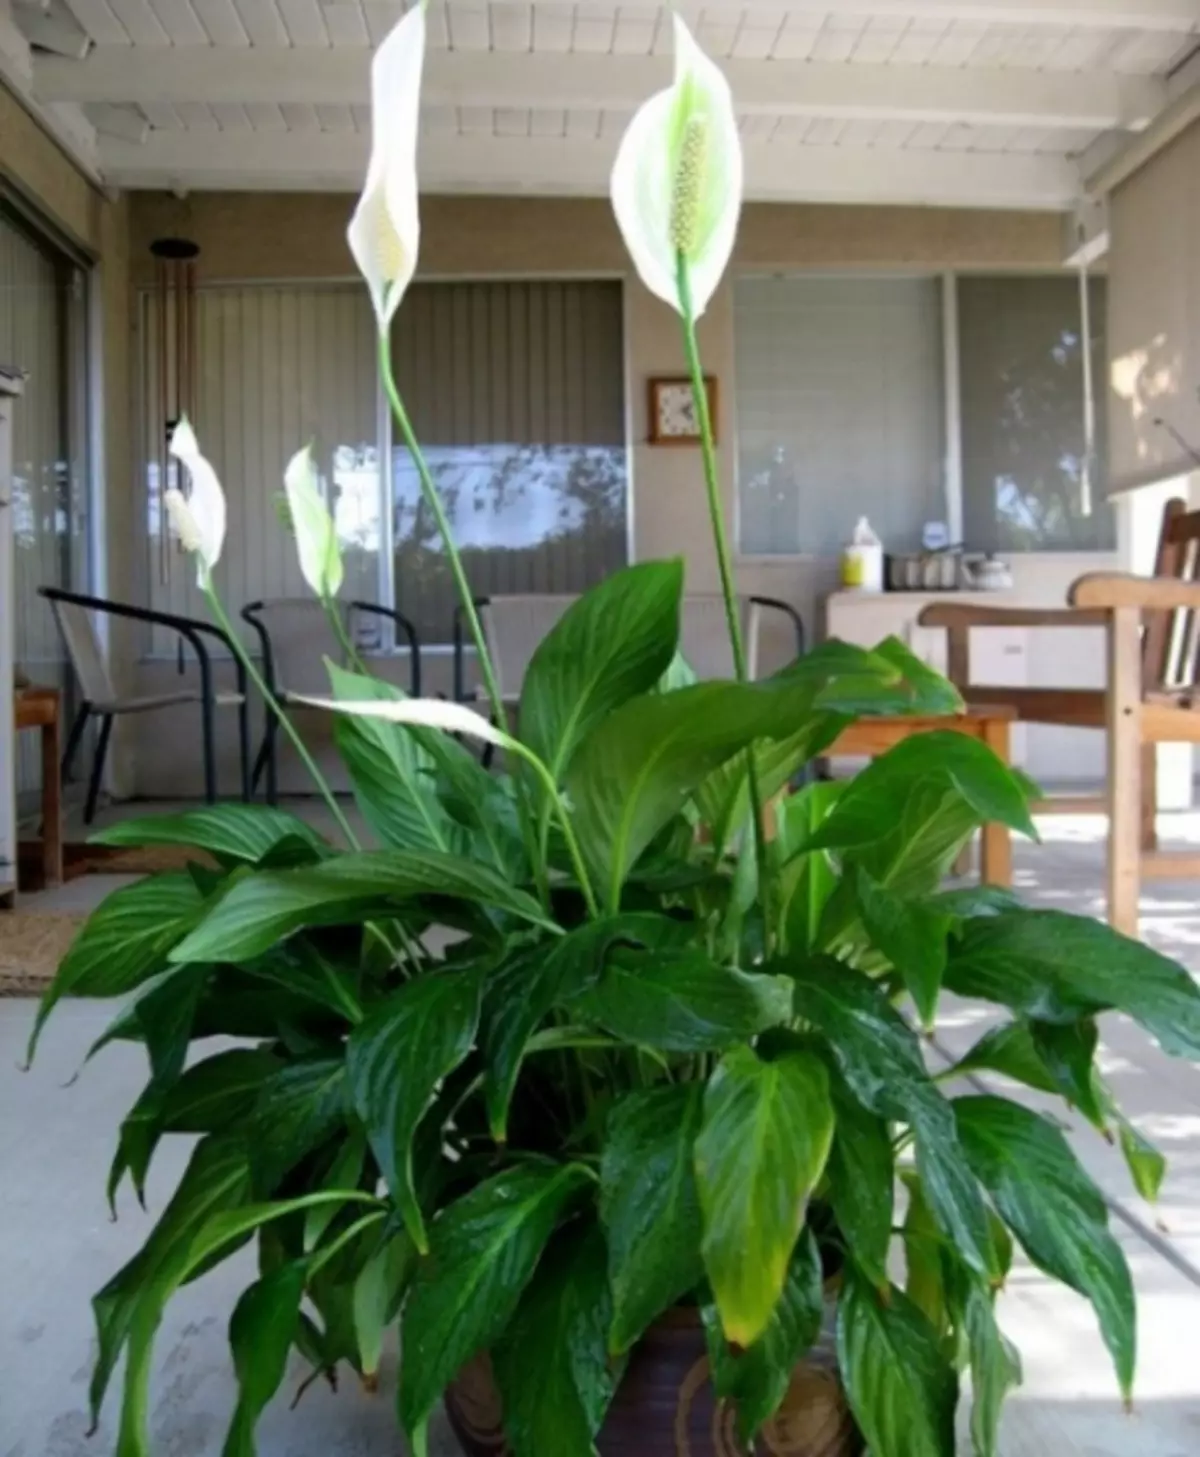 Kaj dati doma? 10 najbolj priljubljenih rastlin v zaprtih prostorih